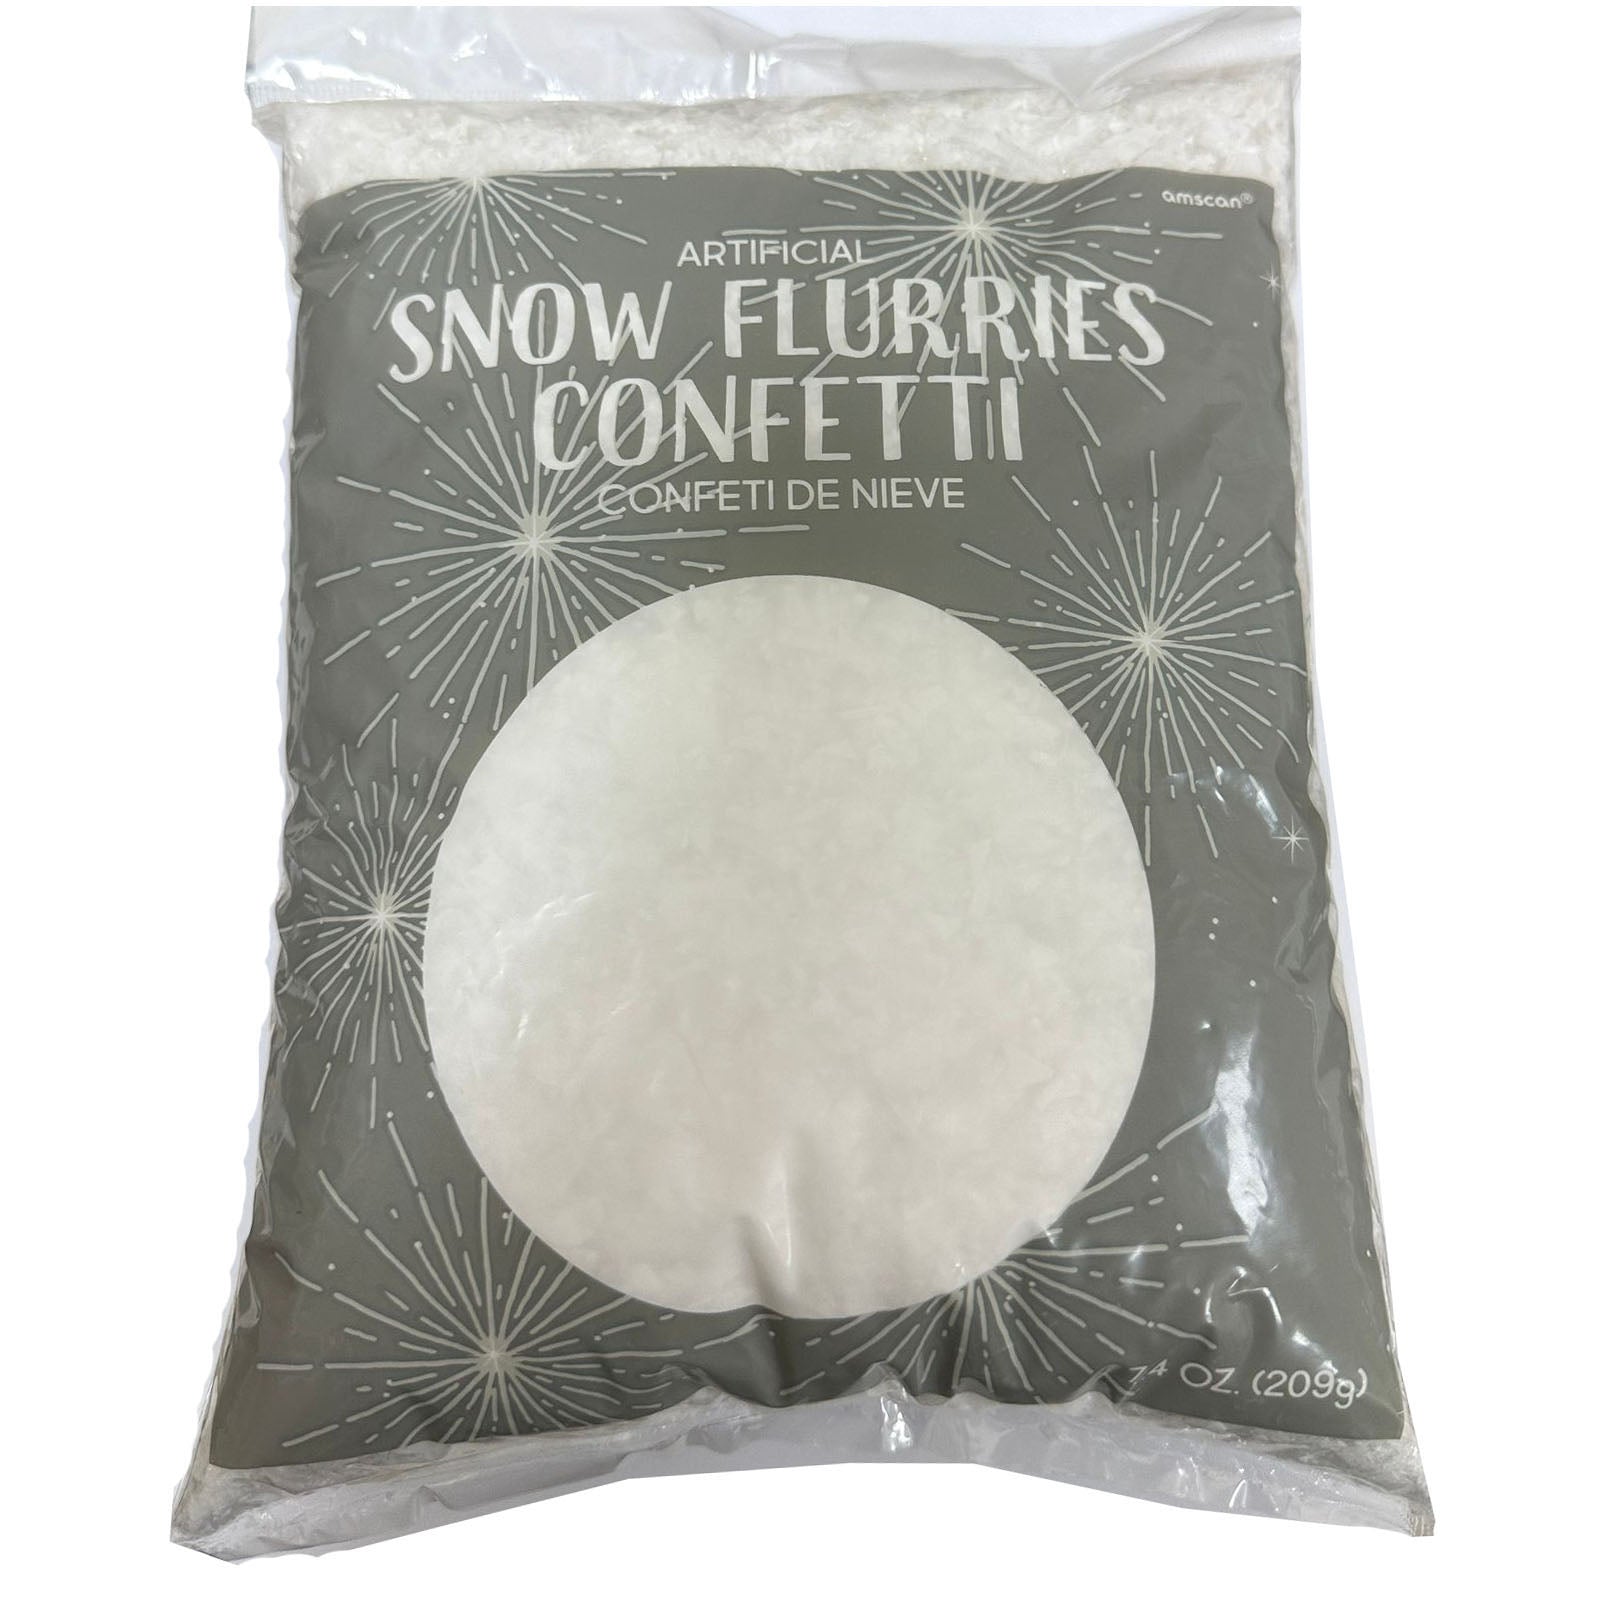 Snow Flurries Artificial Snow 2.5qt